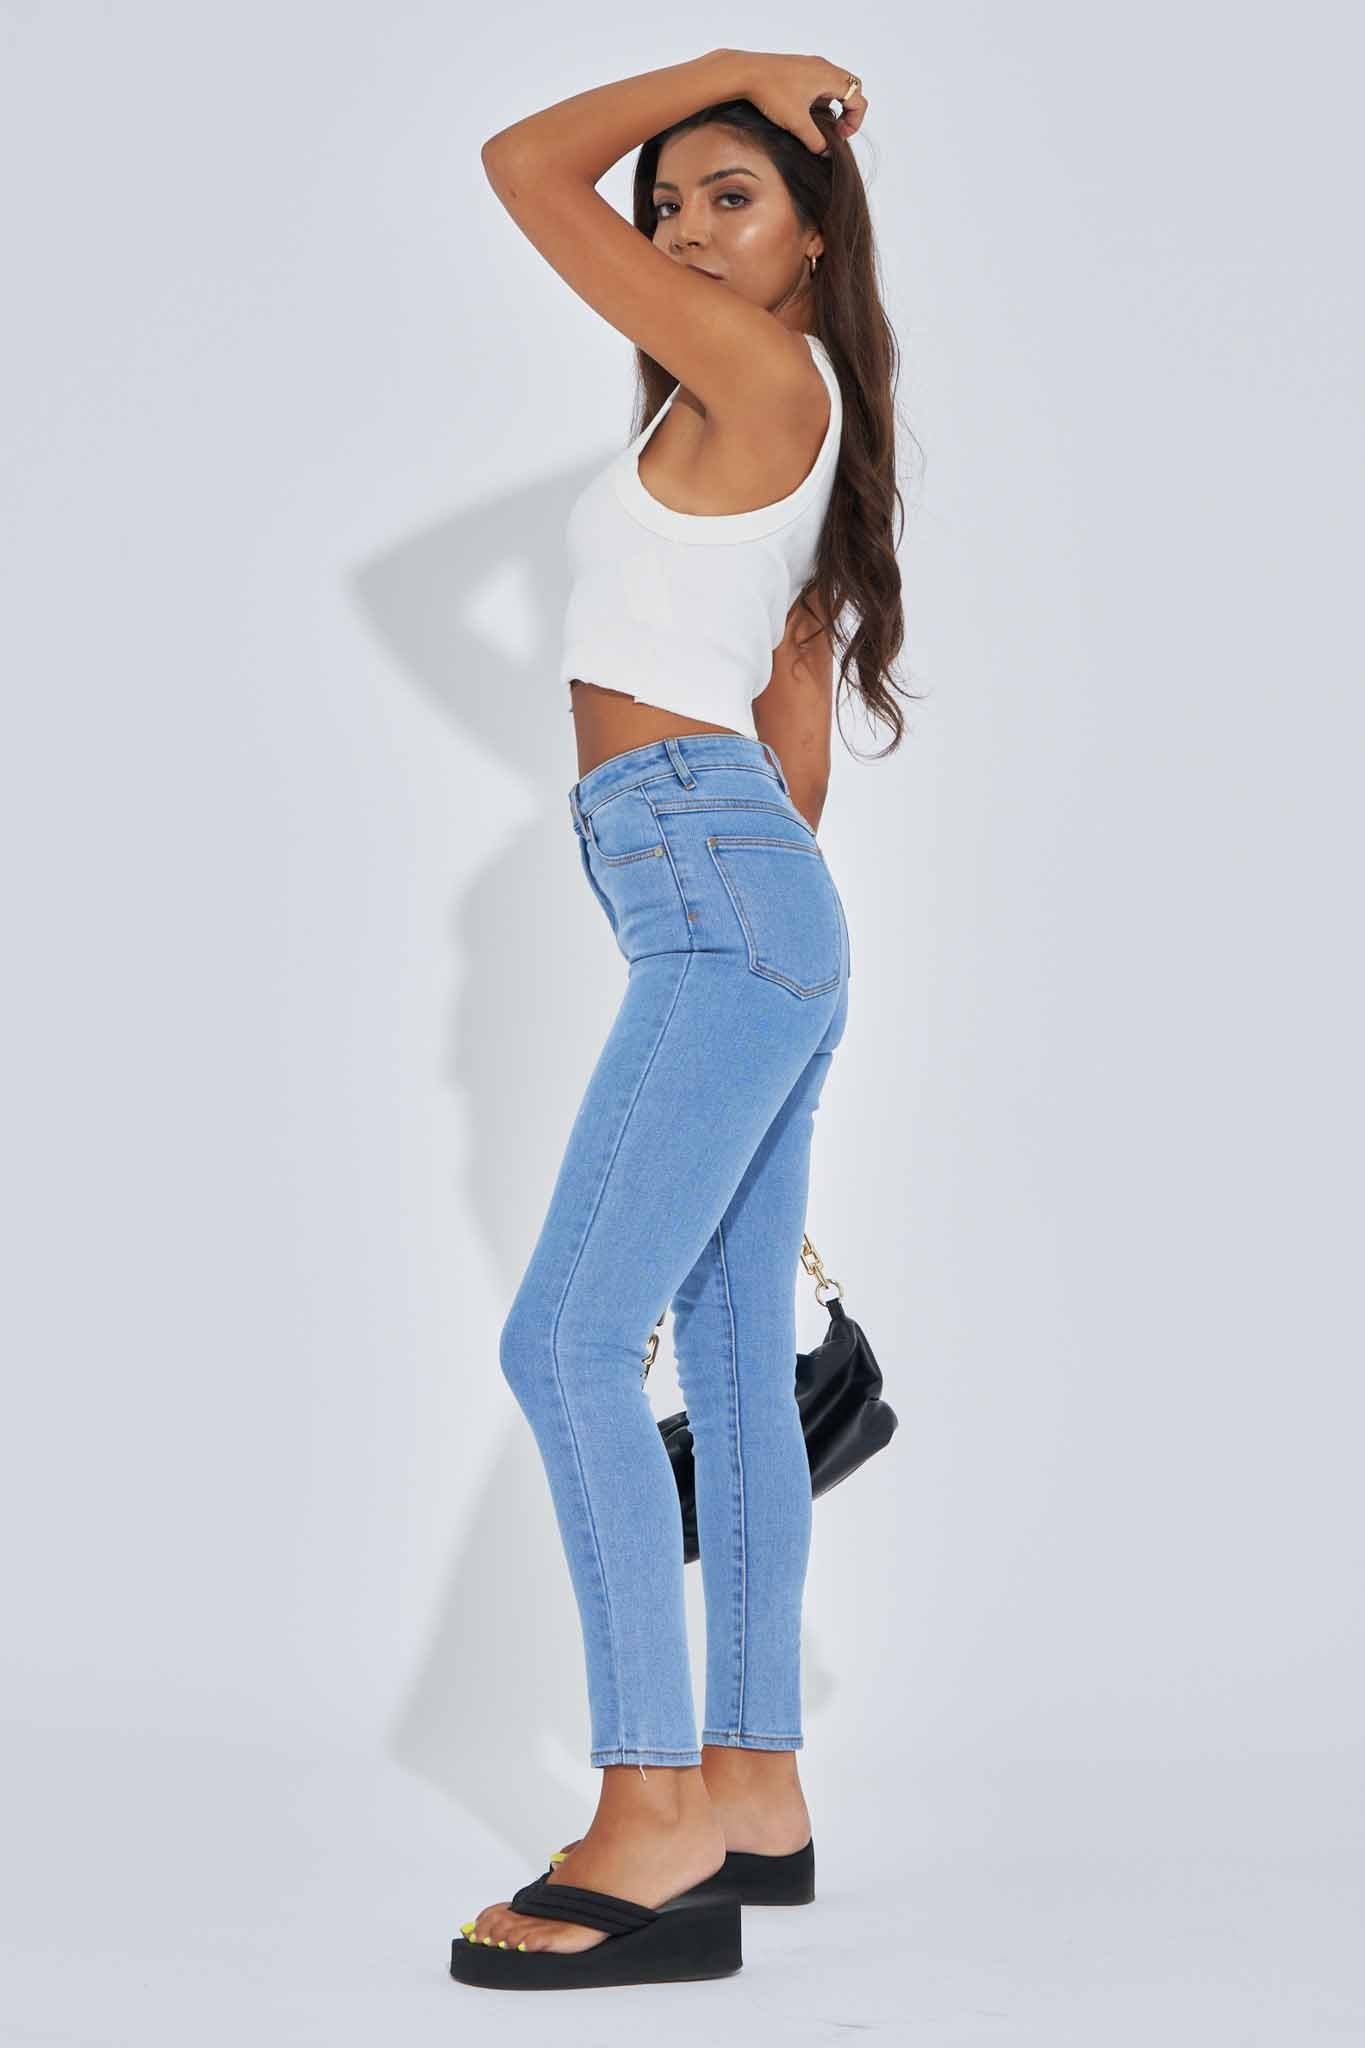 Vintage Women's LA Blues Stretch Denim Jeans Pants Size 8 High